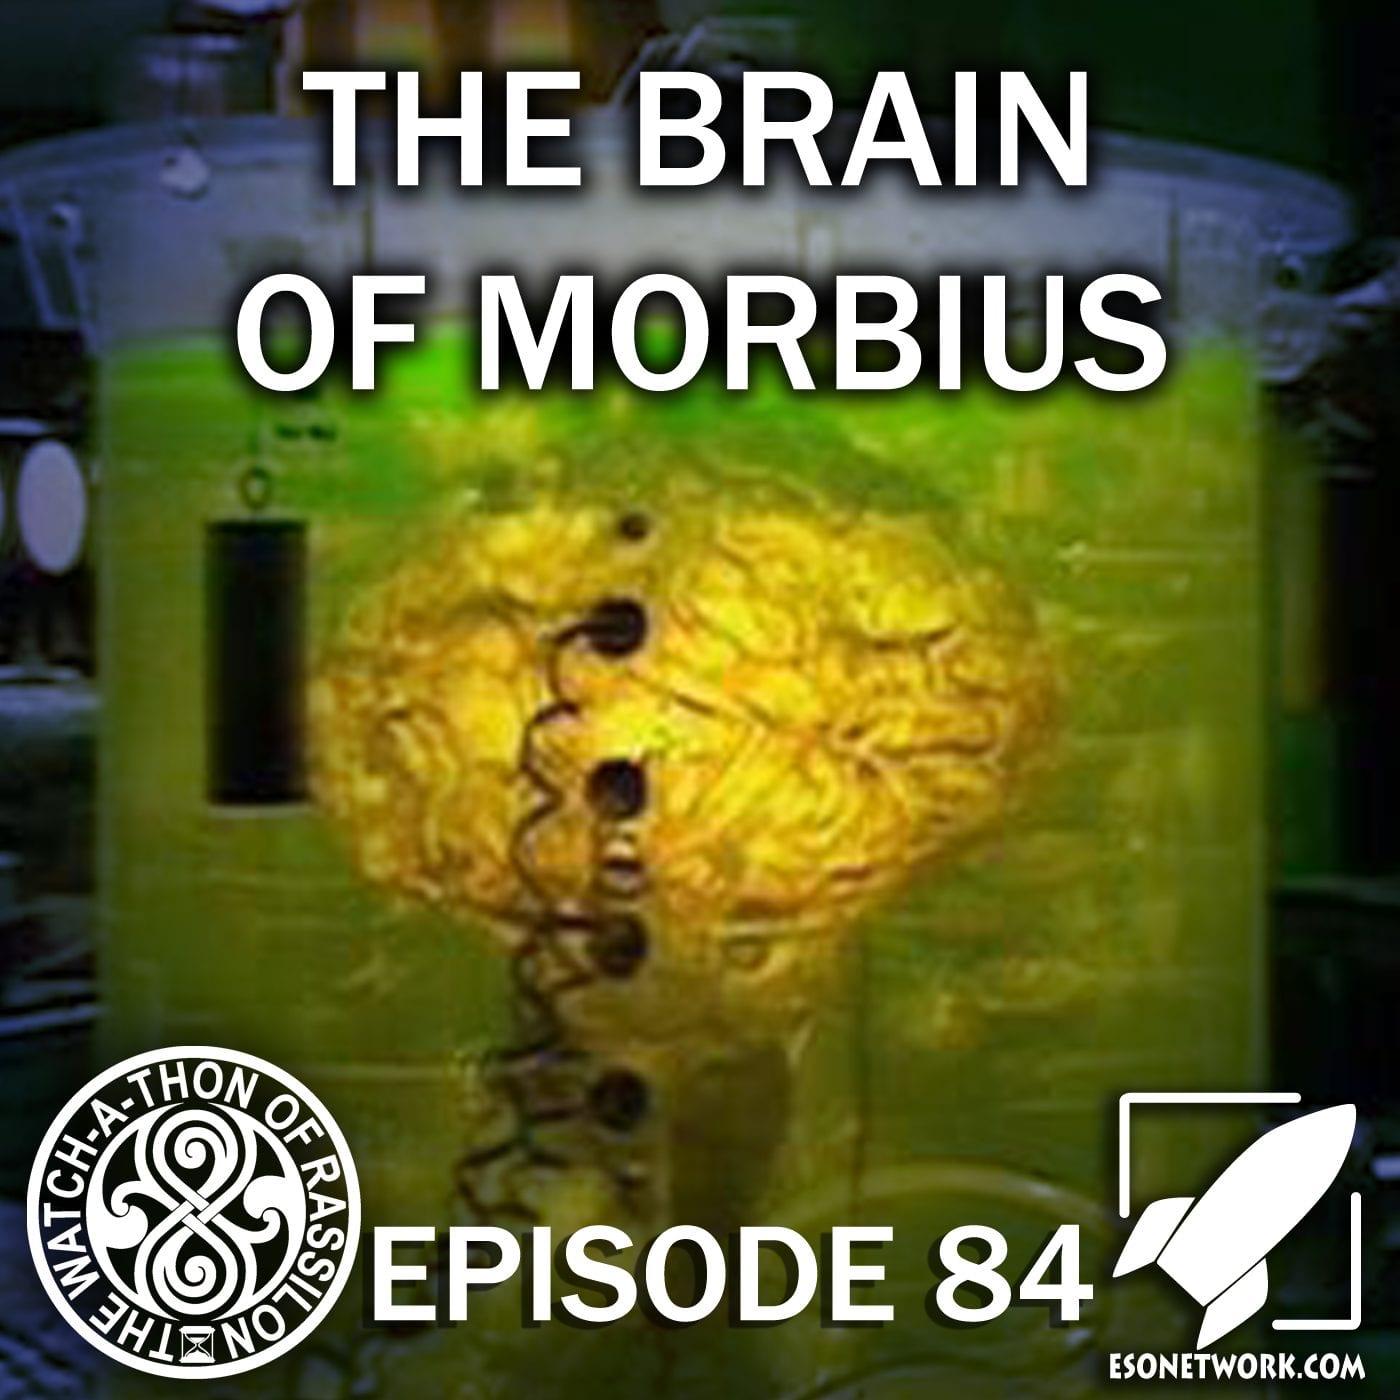 Episode 84: The Brain of Morbius